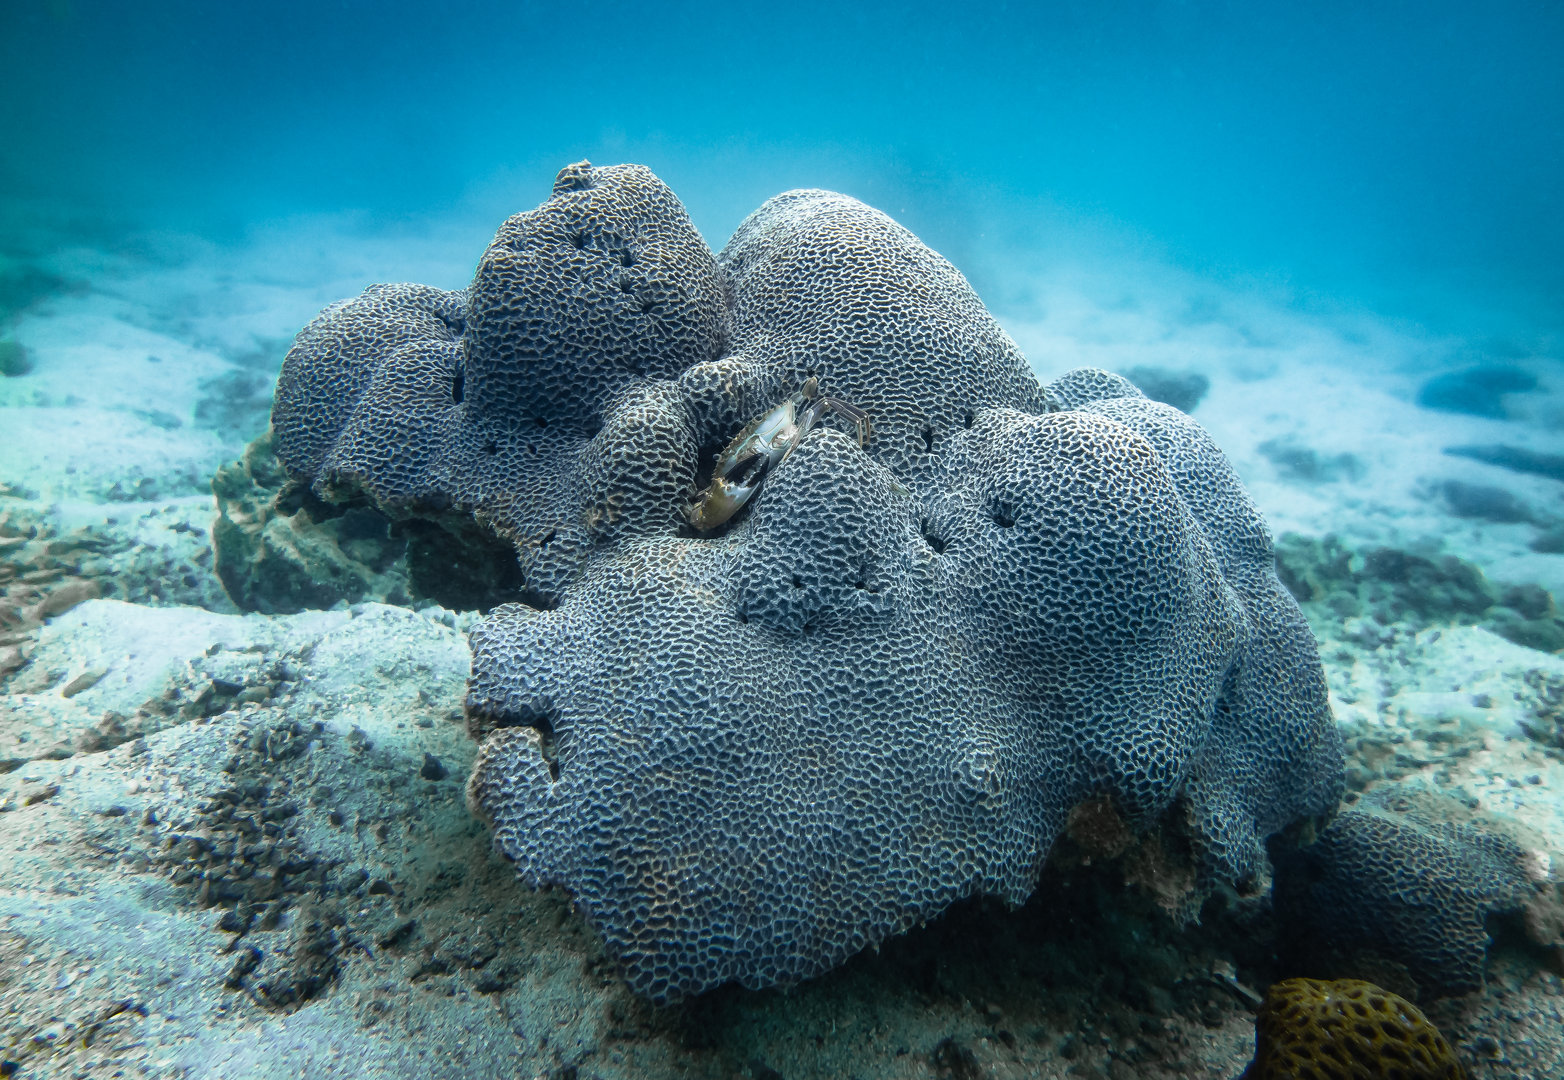 明報: 酷熱海暖橋咀洲九成珊瑚一月白化專家、漁署籲勿用太陽油勿赴當區潛水